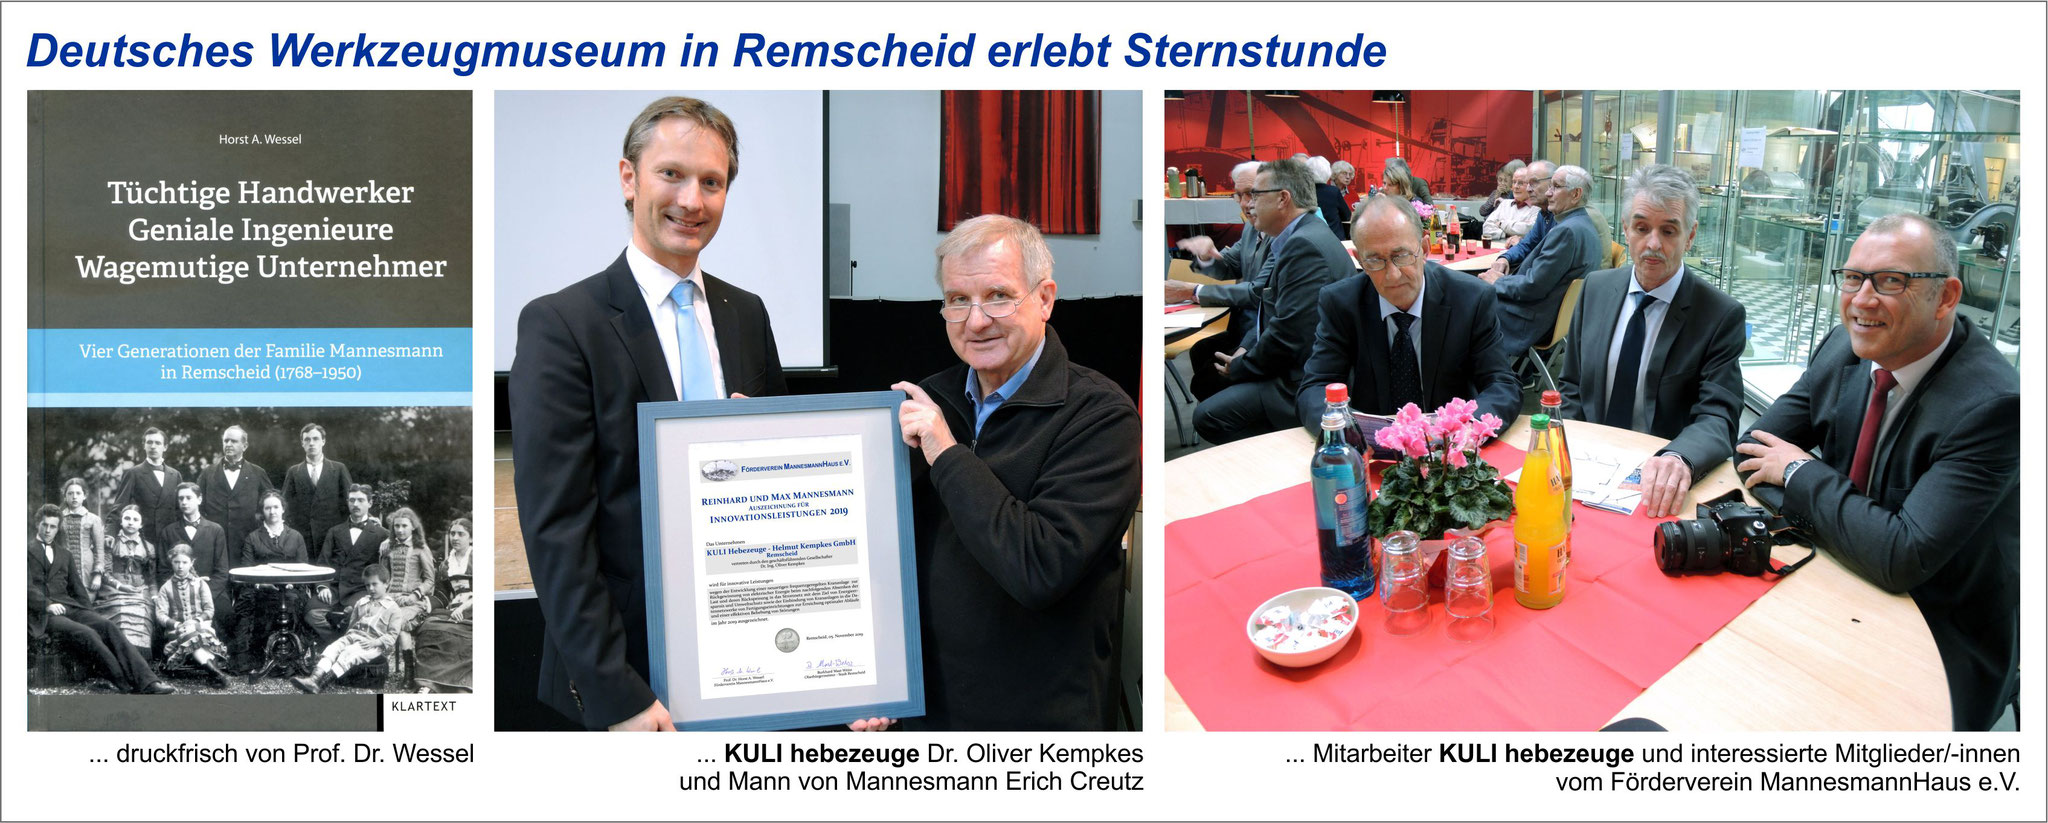 Verleihung der Innovationsauszeichnung Reinhard und Max Mannesmann an KULI Hebezeuge - Helmut Kempkes GmbH am 5. November 2019